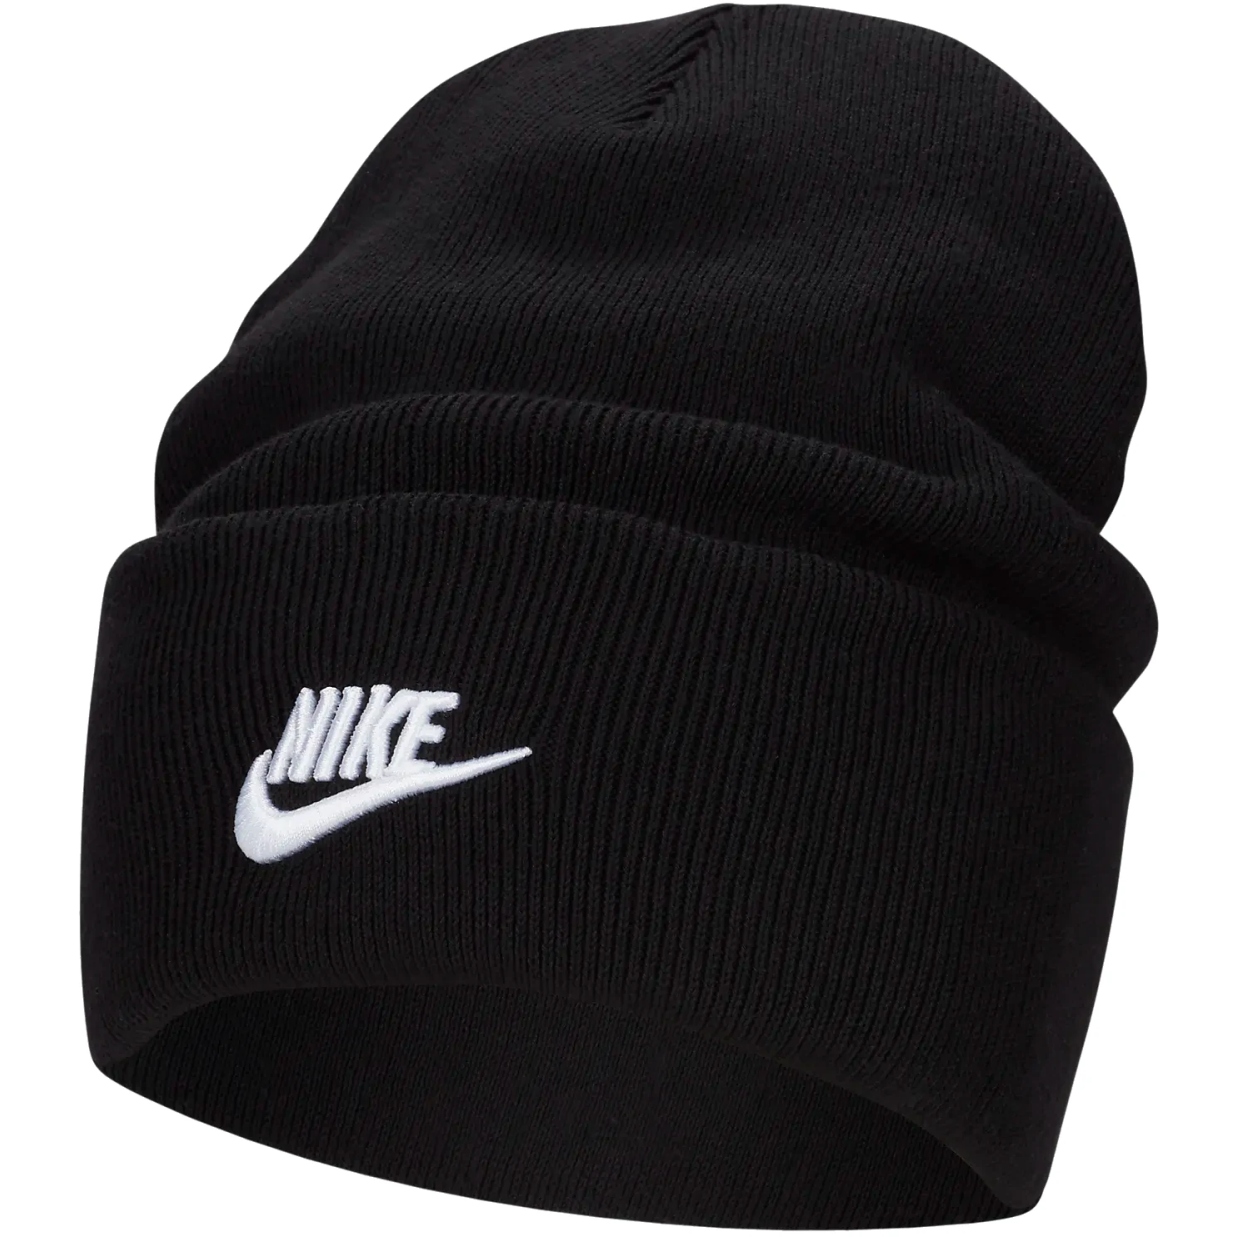 Productfoto van Nike Peak Tall Cuff Futura Beanie - zwart/wit FB6528-010